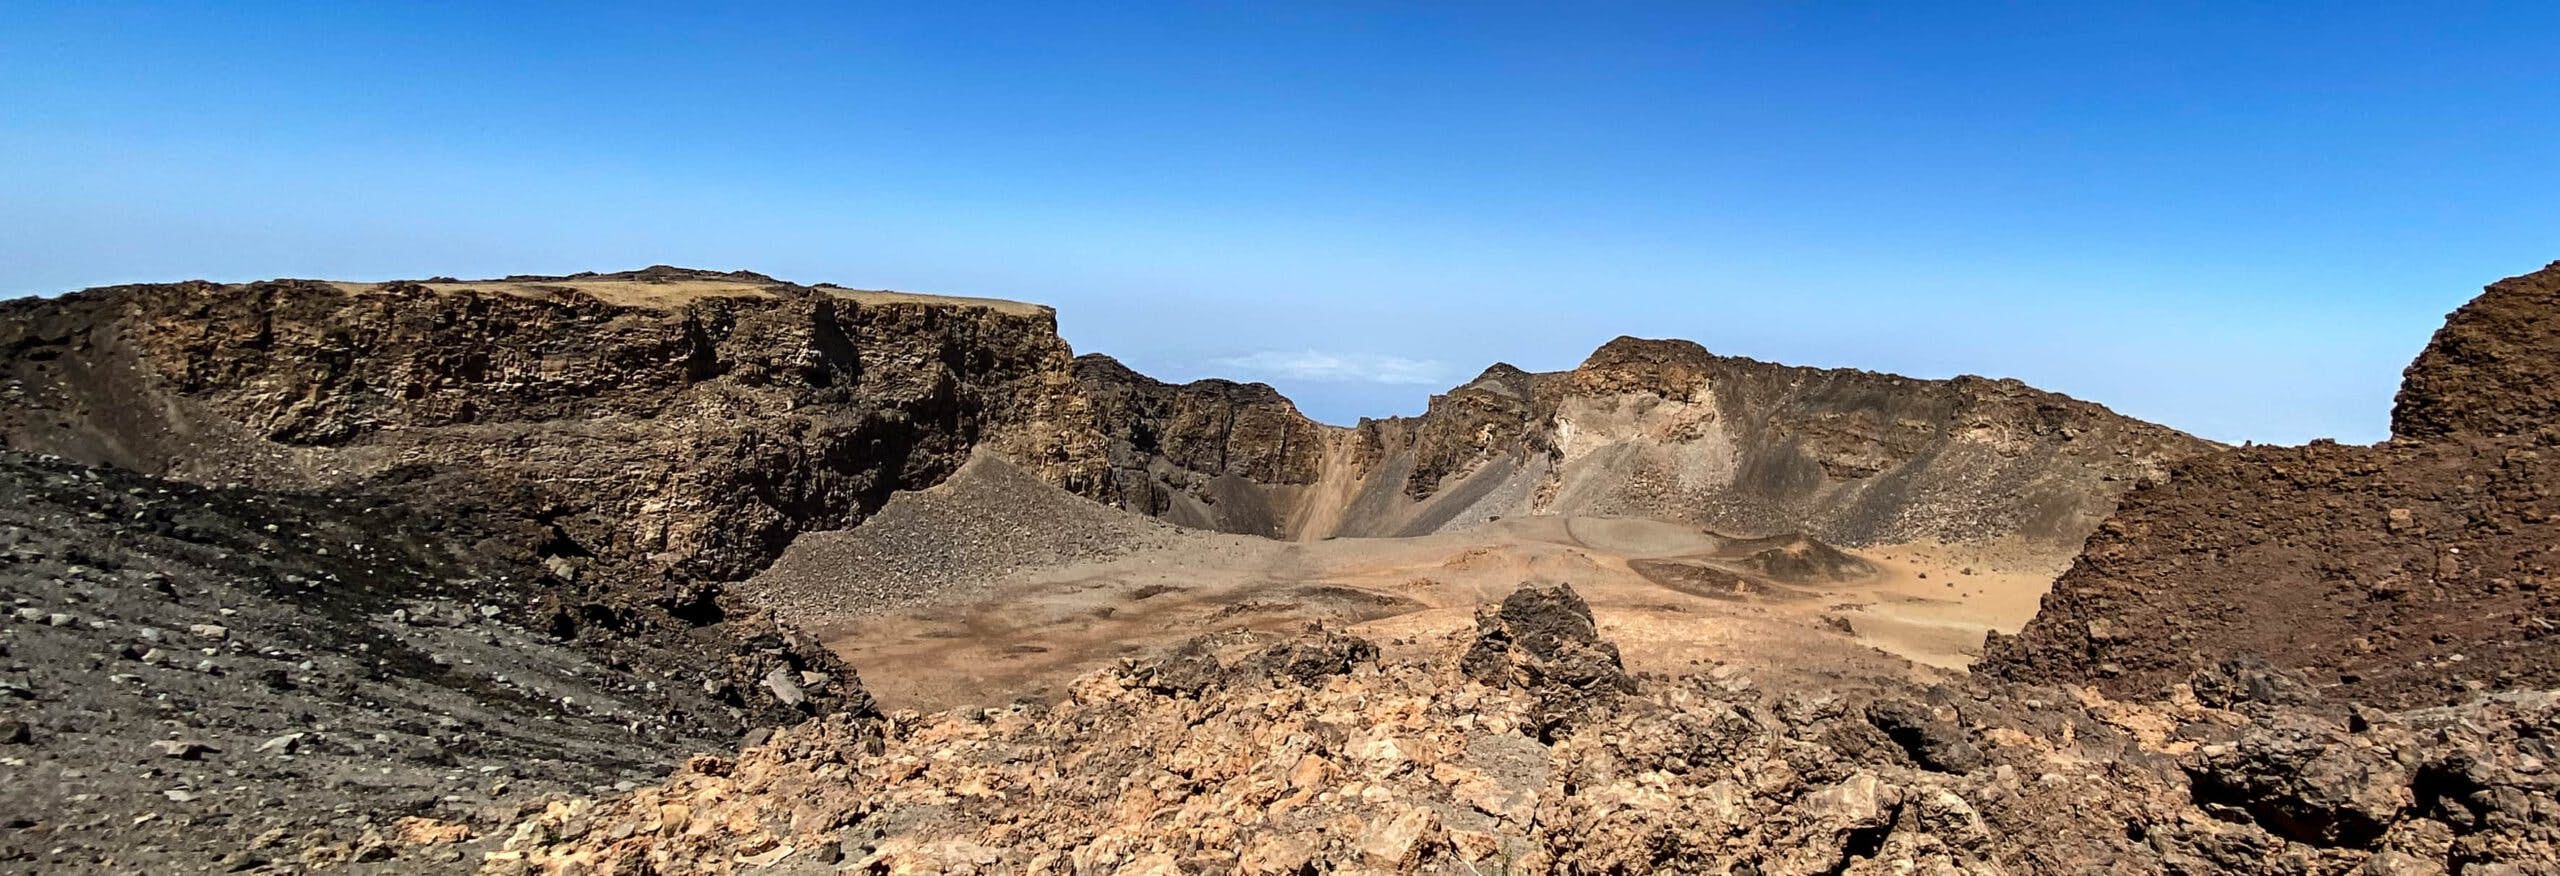 Blick in den gewaltigen Krater des Pico Viejo